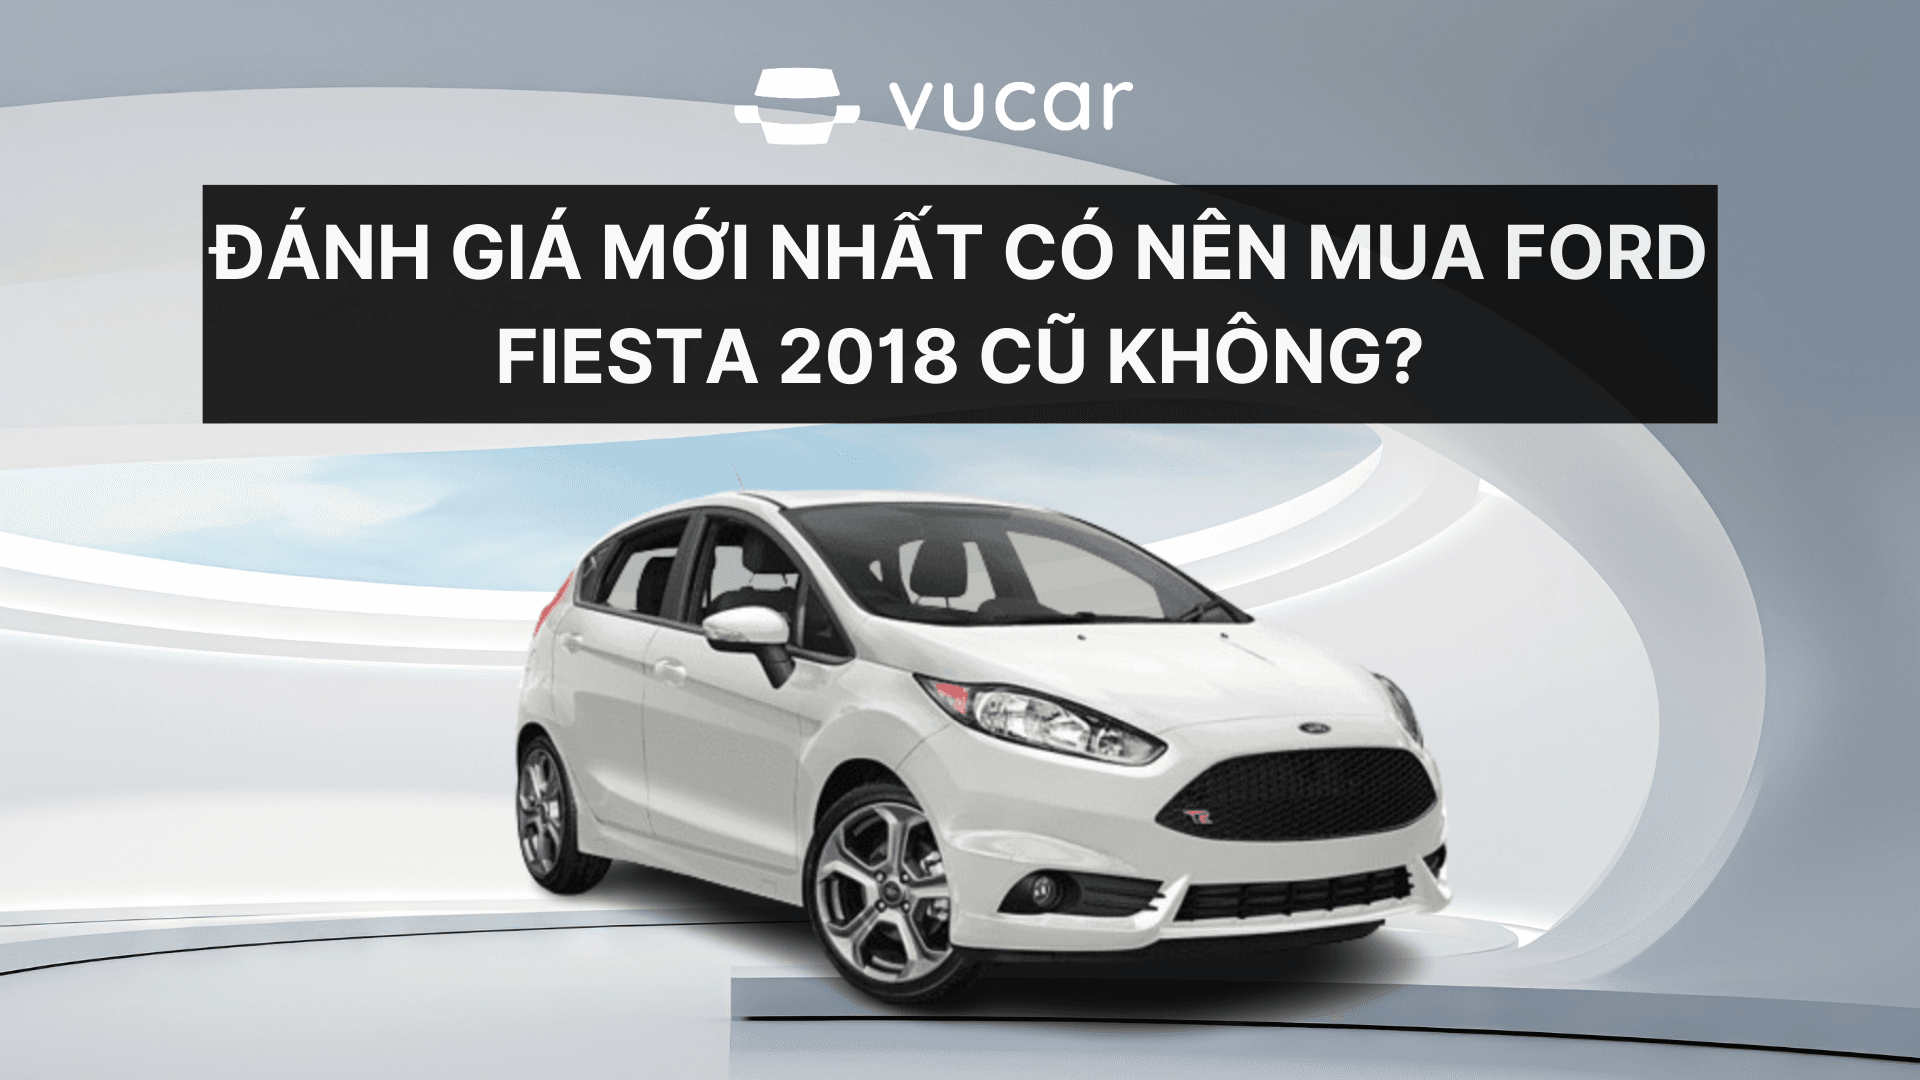 Đánh giá mới nhất có nên mua Ford Fiesta 2018 cũ không?